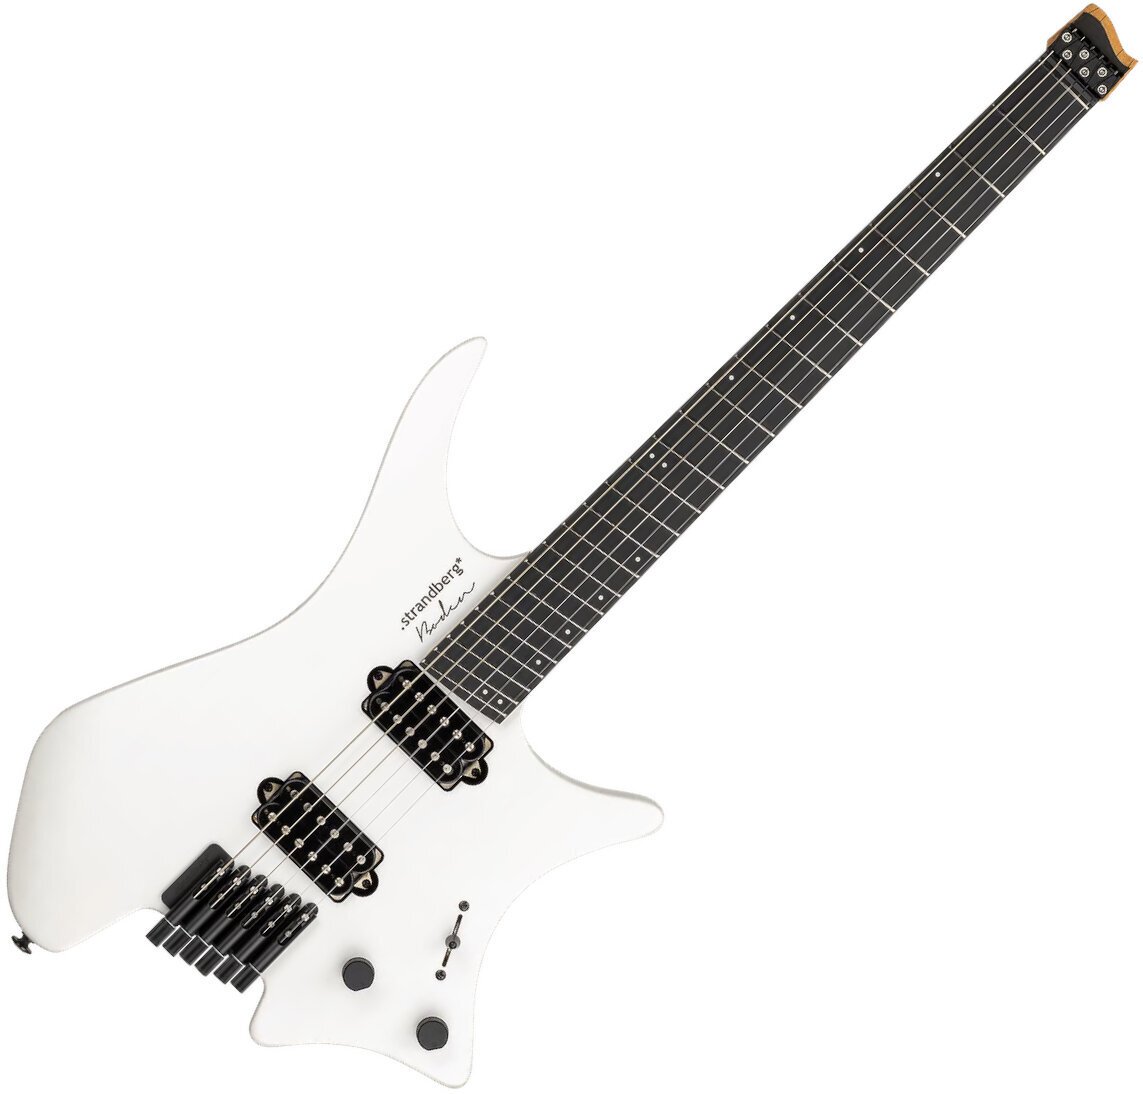 Headless gitaar Strandberg Boden Metal NX 6 White Granite